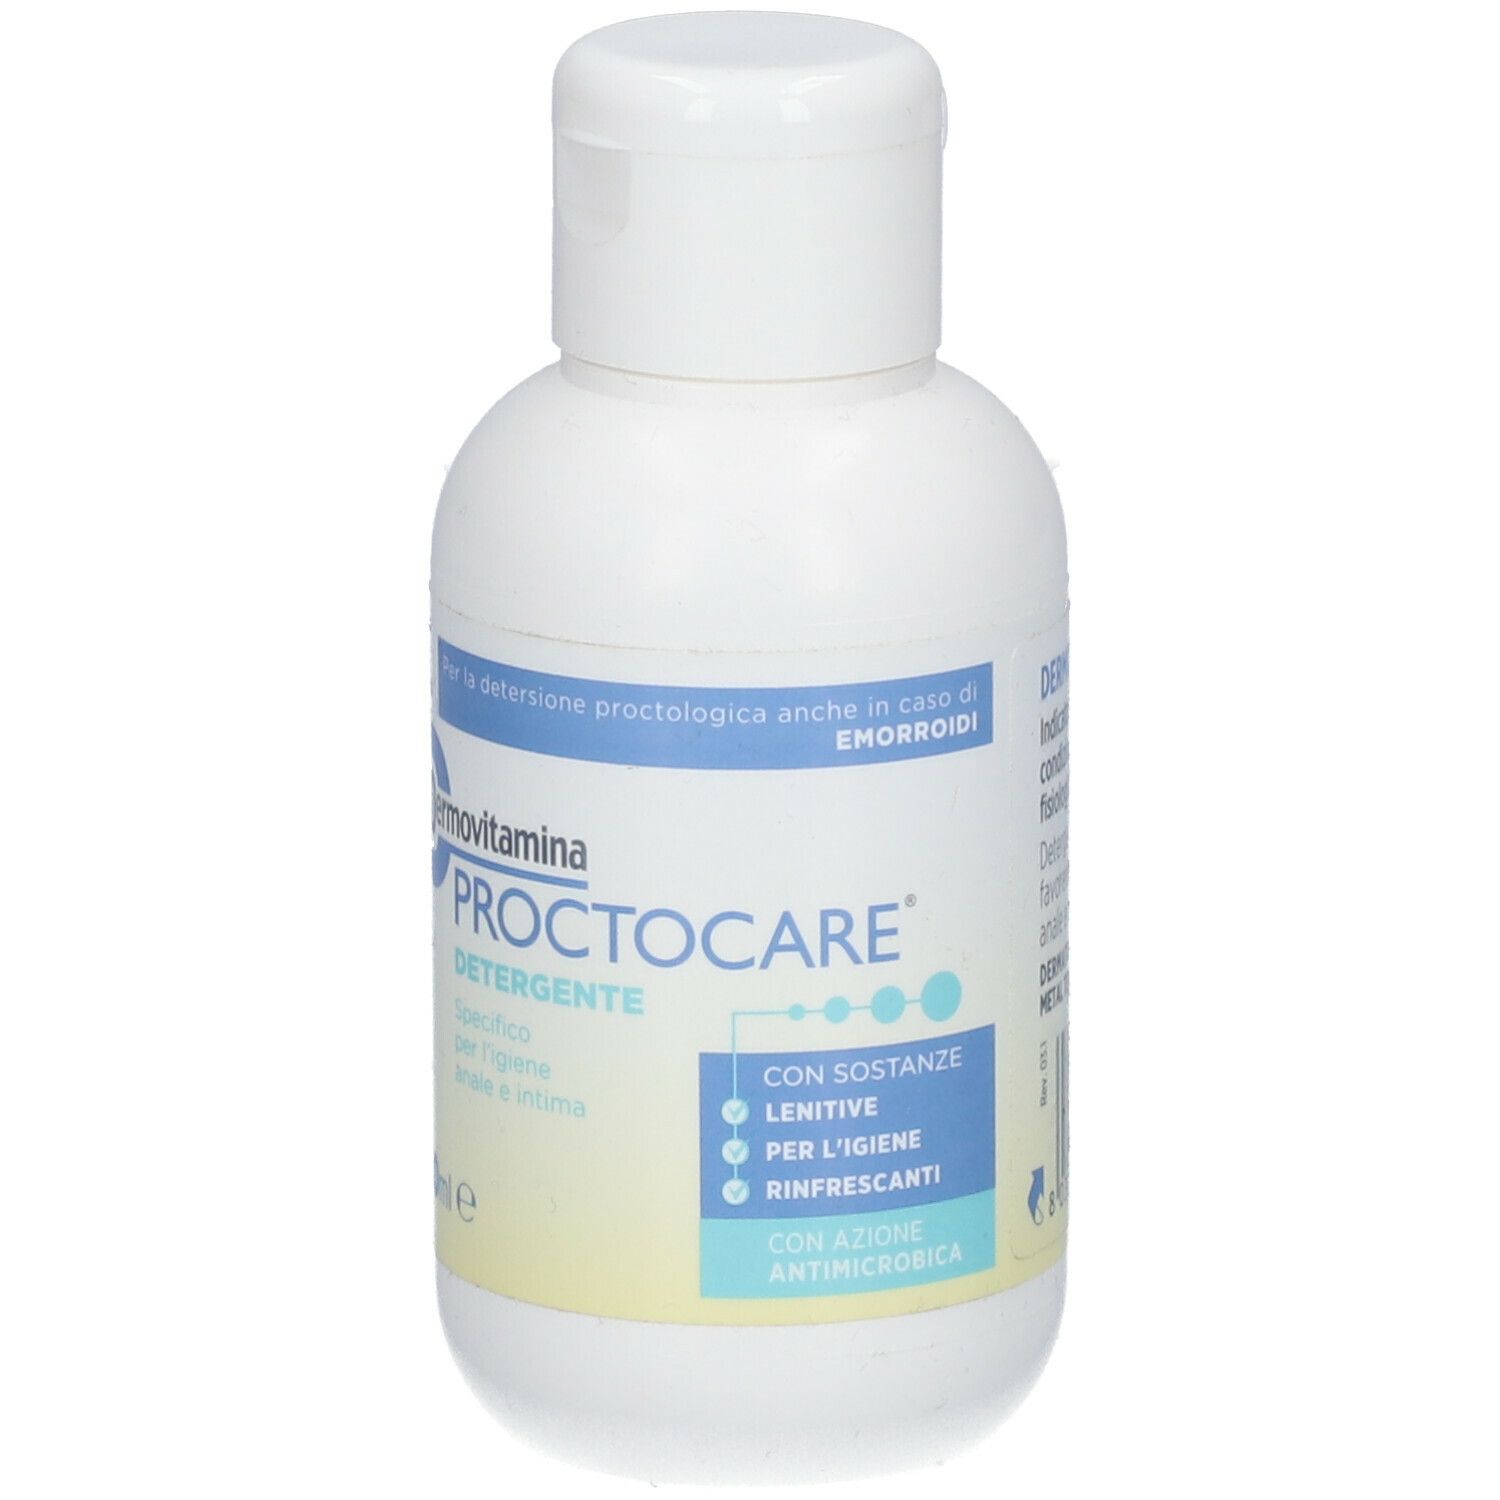 Dermovitamina Protocare® Detergente